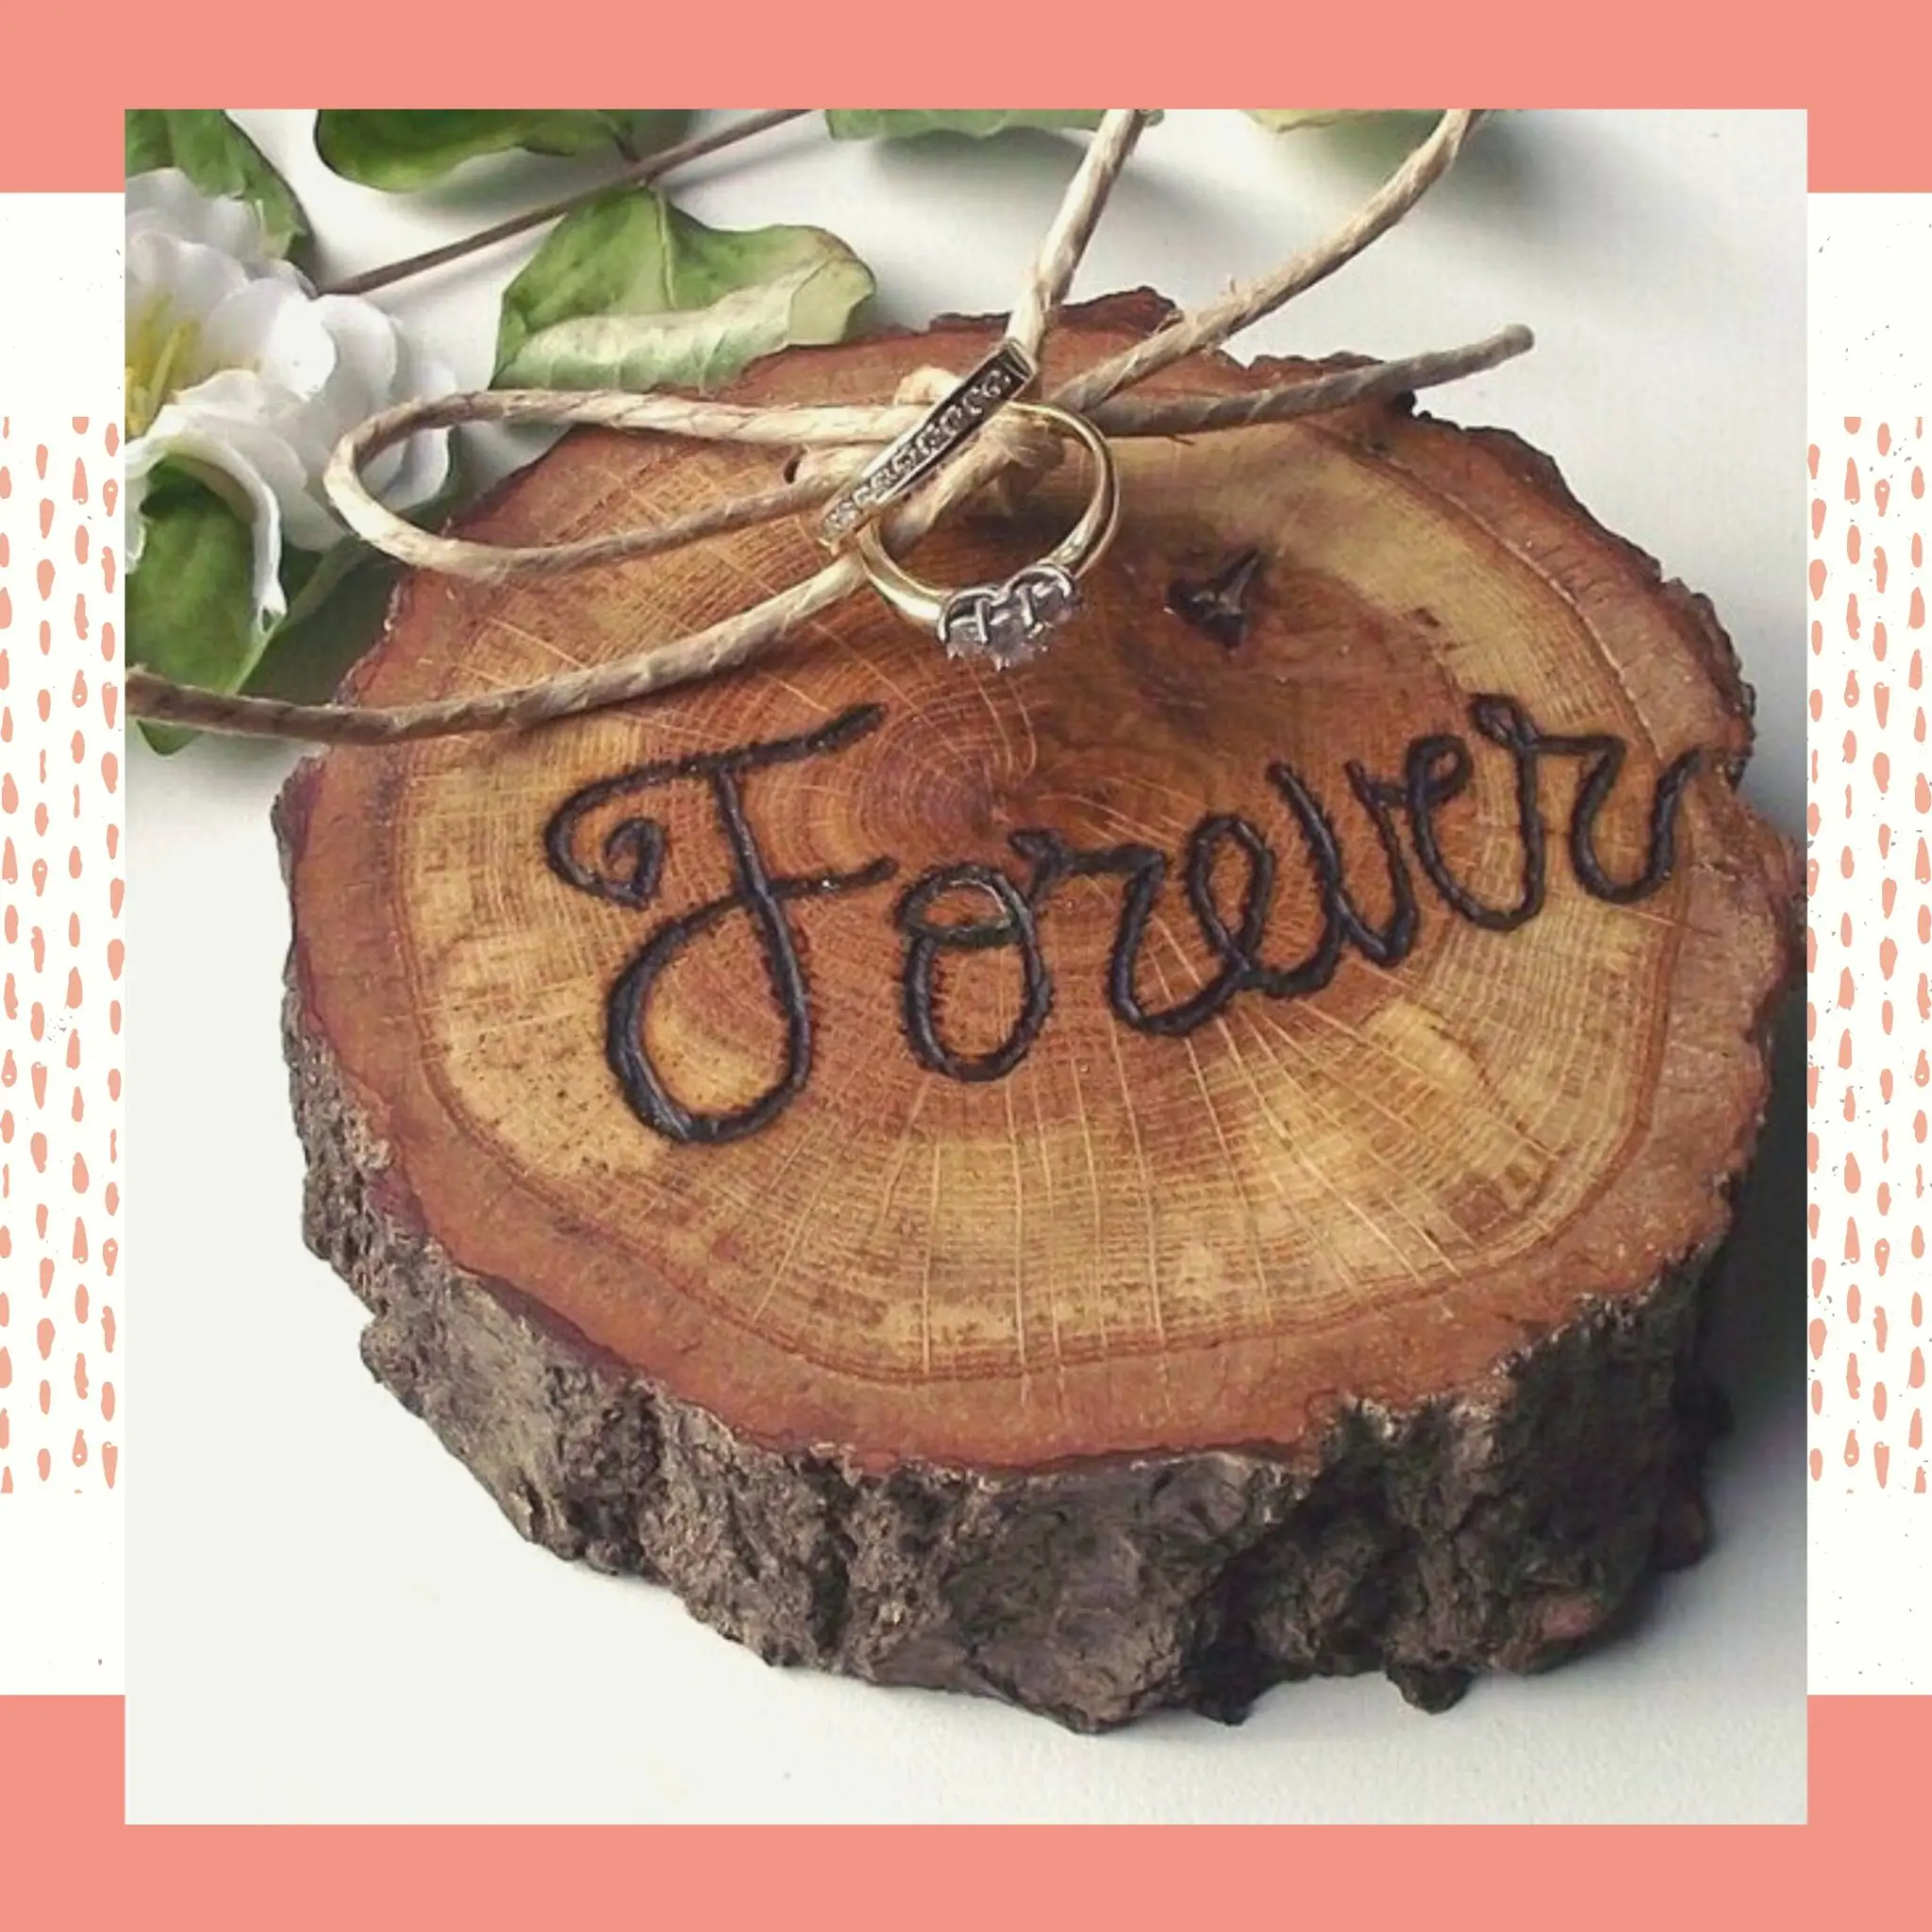 Porta aliança de madeira com a palavra “forever” gravada